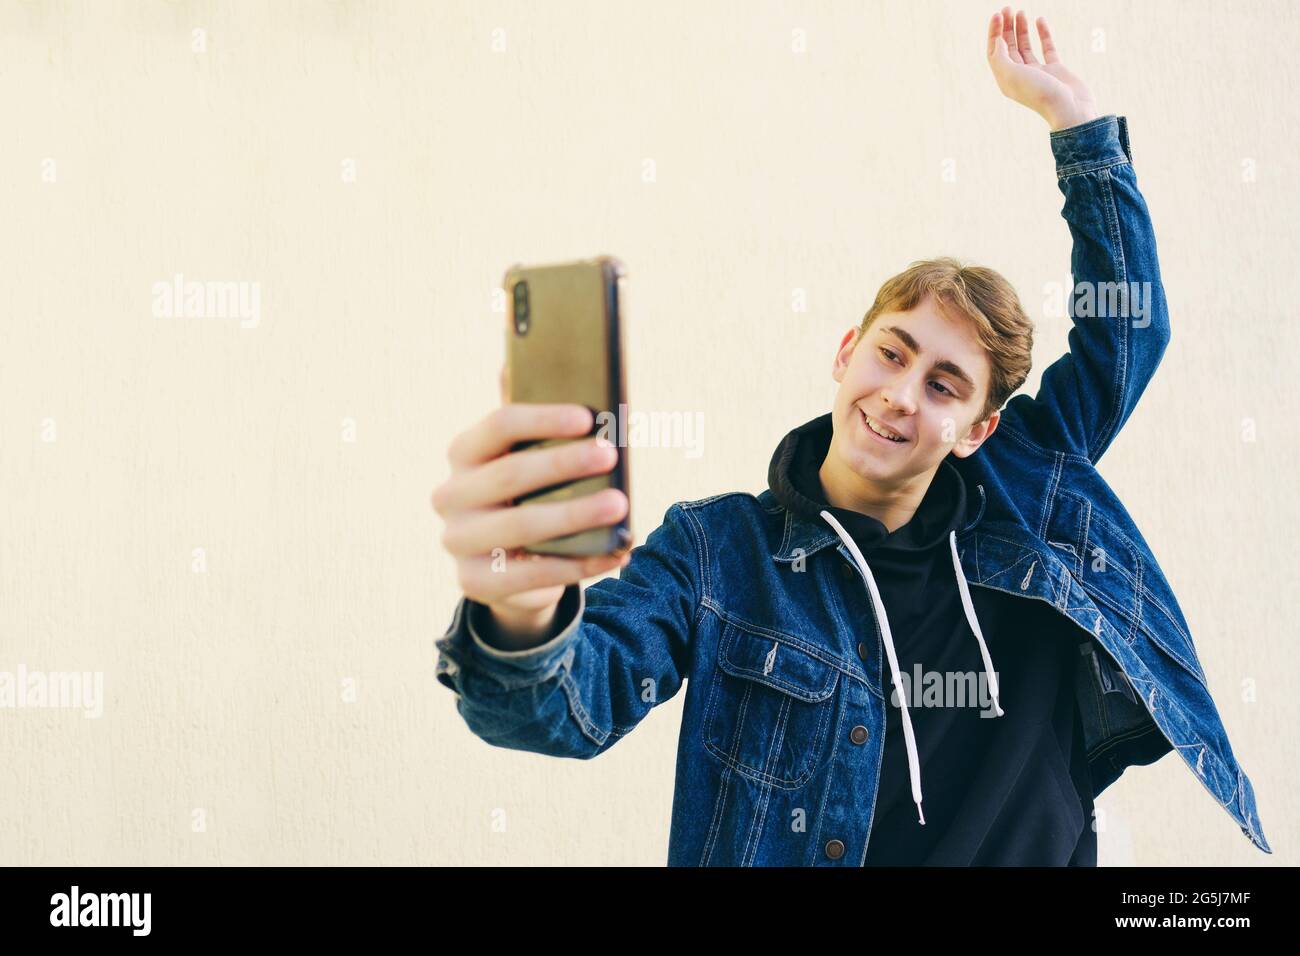 Ein Teenager macht ein Selfie - ein junger Mann macht ein Foto von sich selbst auf einem Smartphone - ein glücklicher Teenager macht ein Foto von sich selbst auf seinem Handy gemacht a h Stockfoto